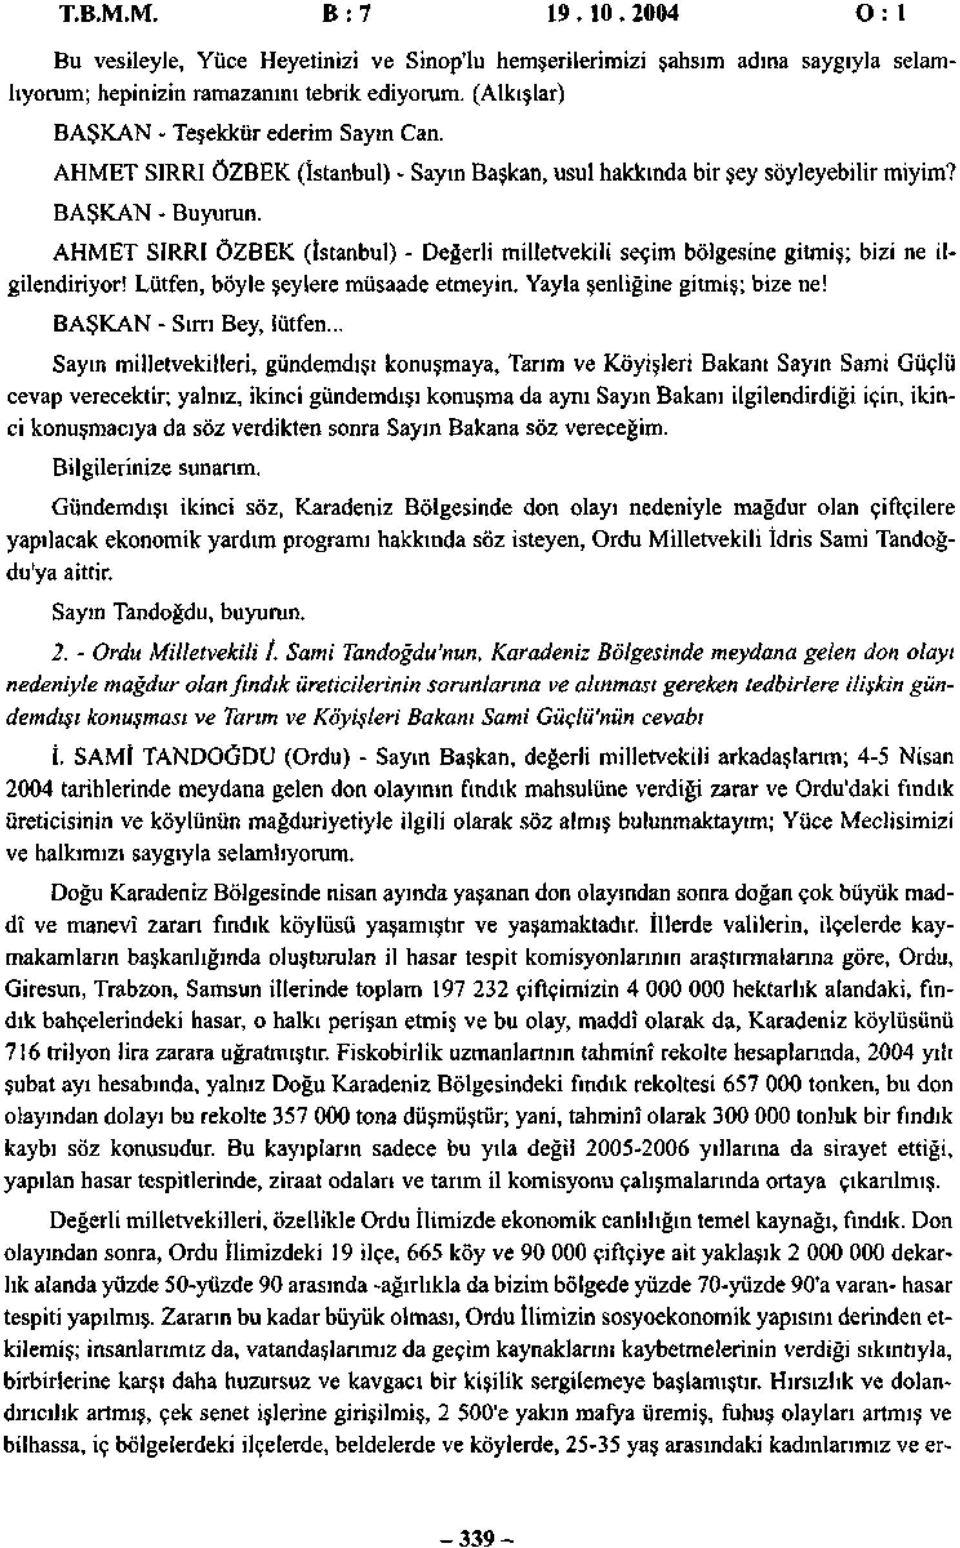 AHMET SIRRI ÖZBEK (İstanbul) - Değerli milletvekili seçim bölgesine gitmiş; bizi ne ilgilendiriyor! Lütfen, böyle şeylere müsaade etmeyin. Yayla şenliğine gitmiş; bize ne! BAŞKAN - Sırrı Bey, lütfen.